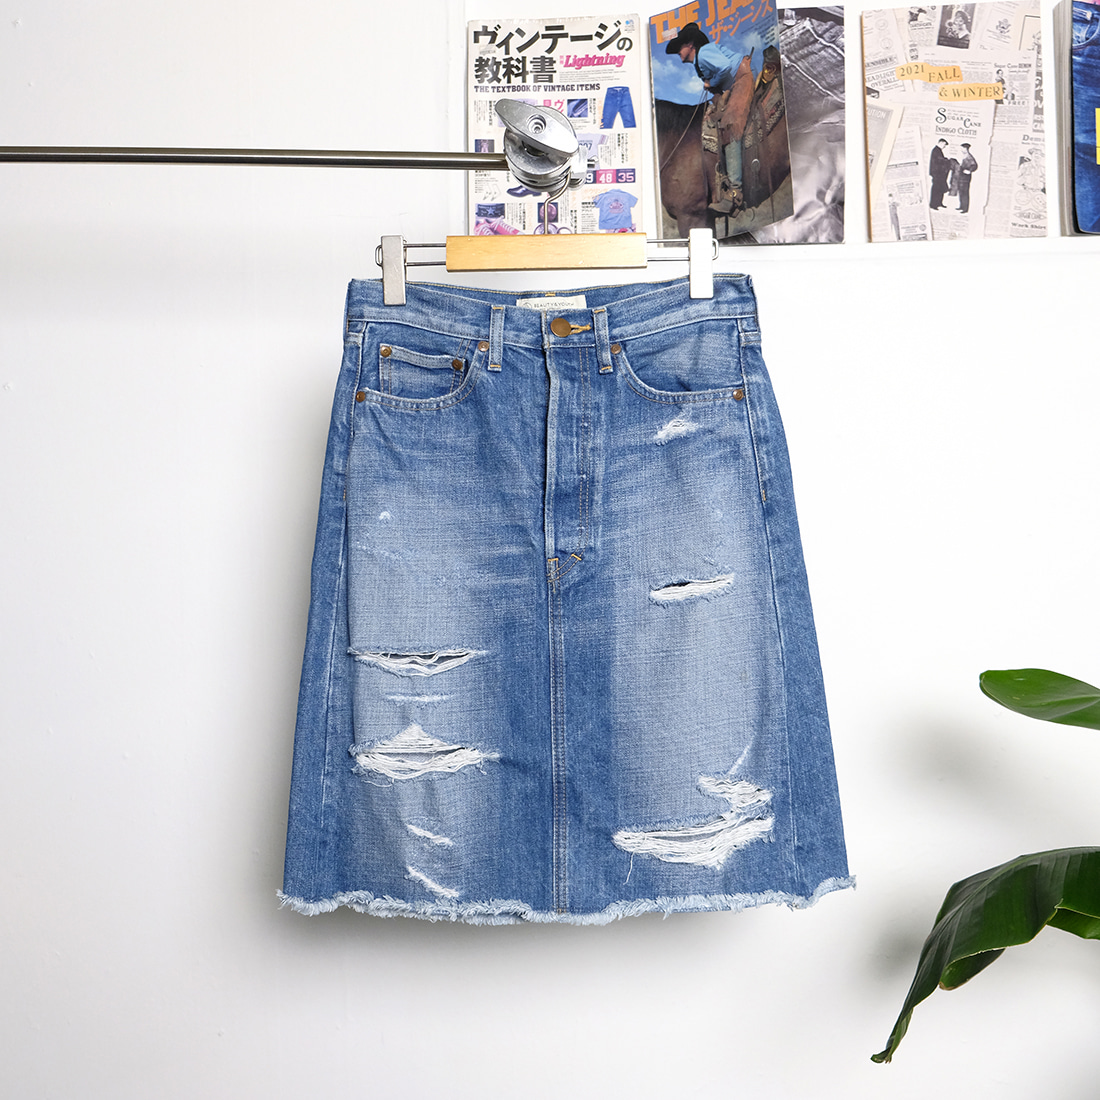 유나이티드 애로우즈 / Made in japan  United arrows denim skirt